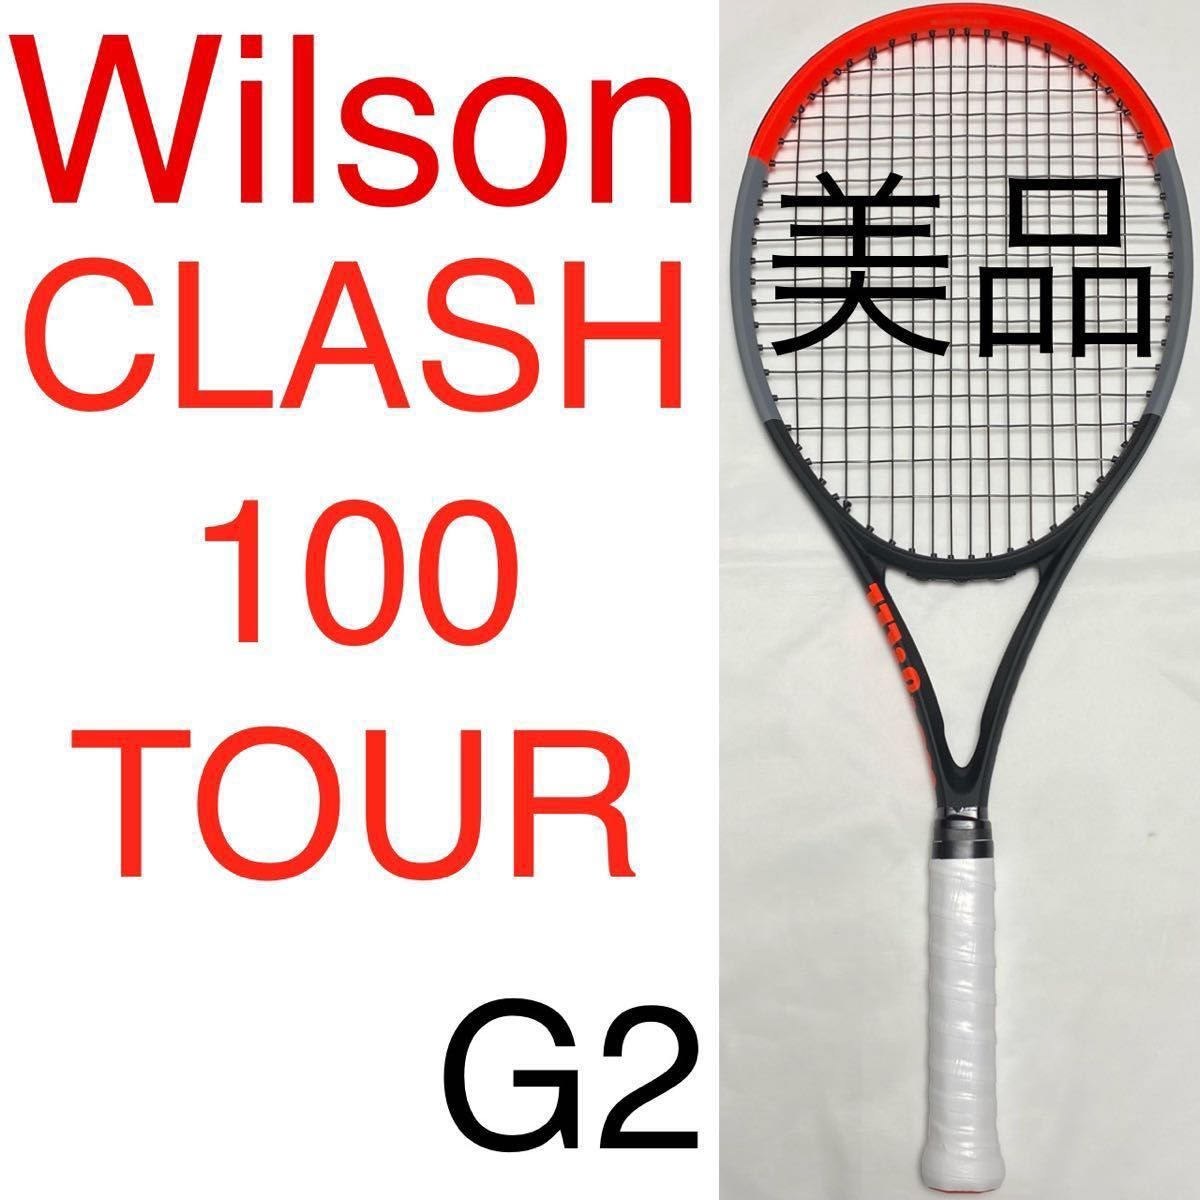 Wilson CLASH 100 TOUR V1.0 G2 ウィルソン クラッシュ ツアー 初代 美品